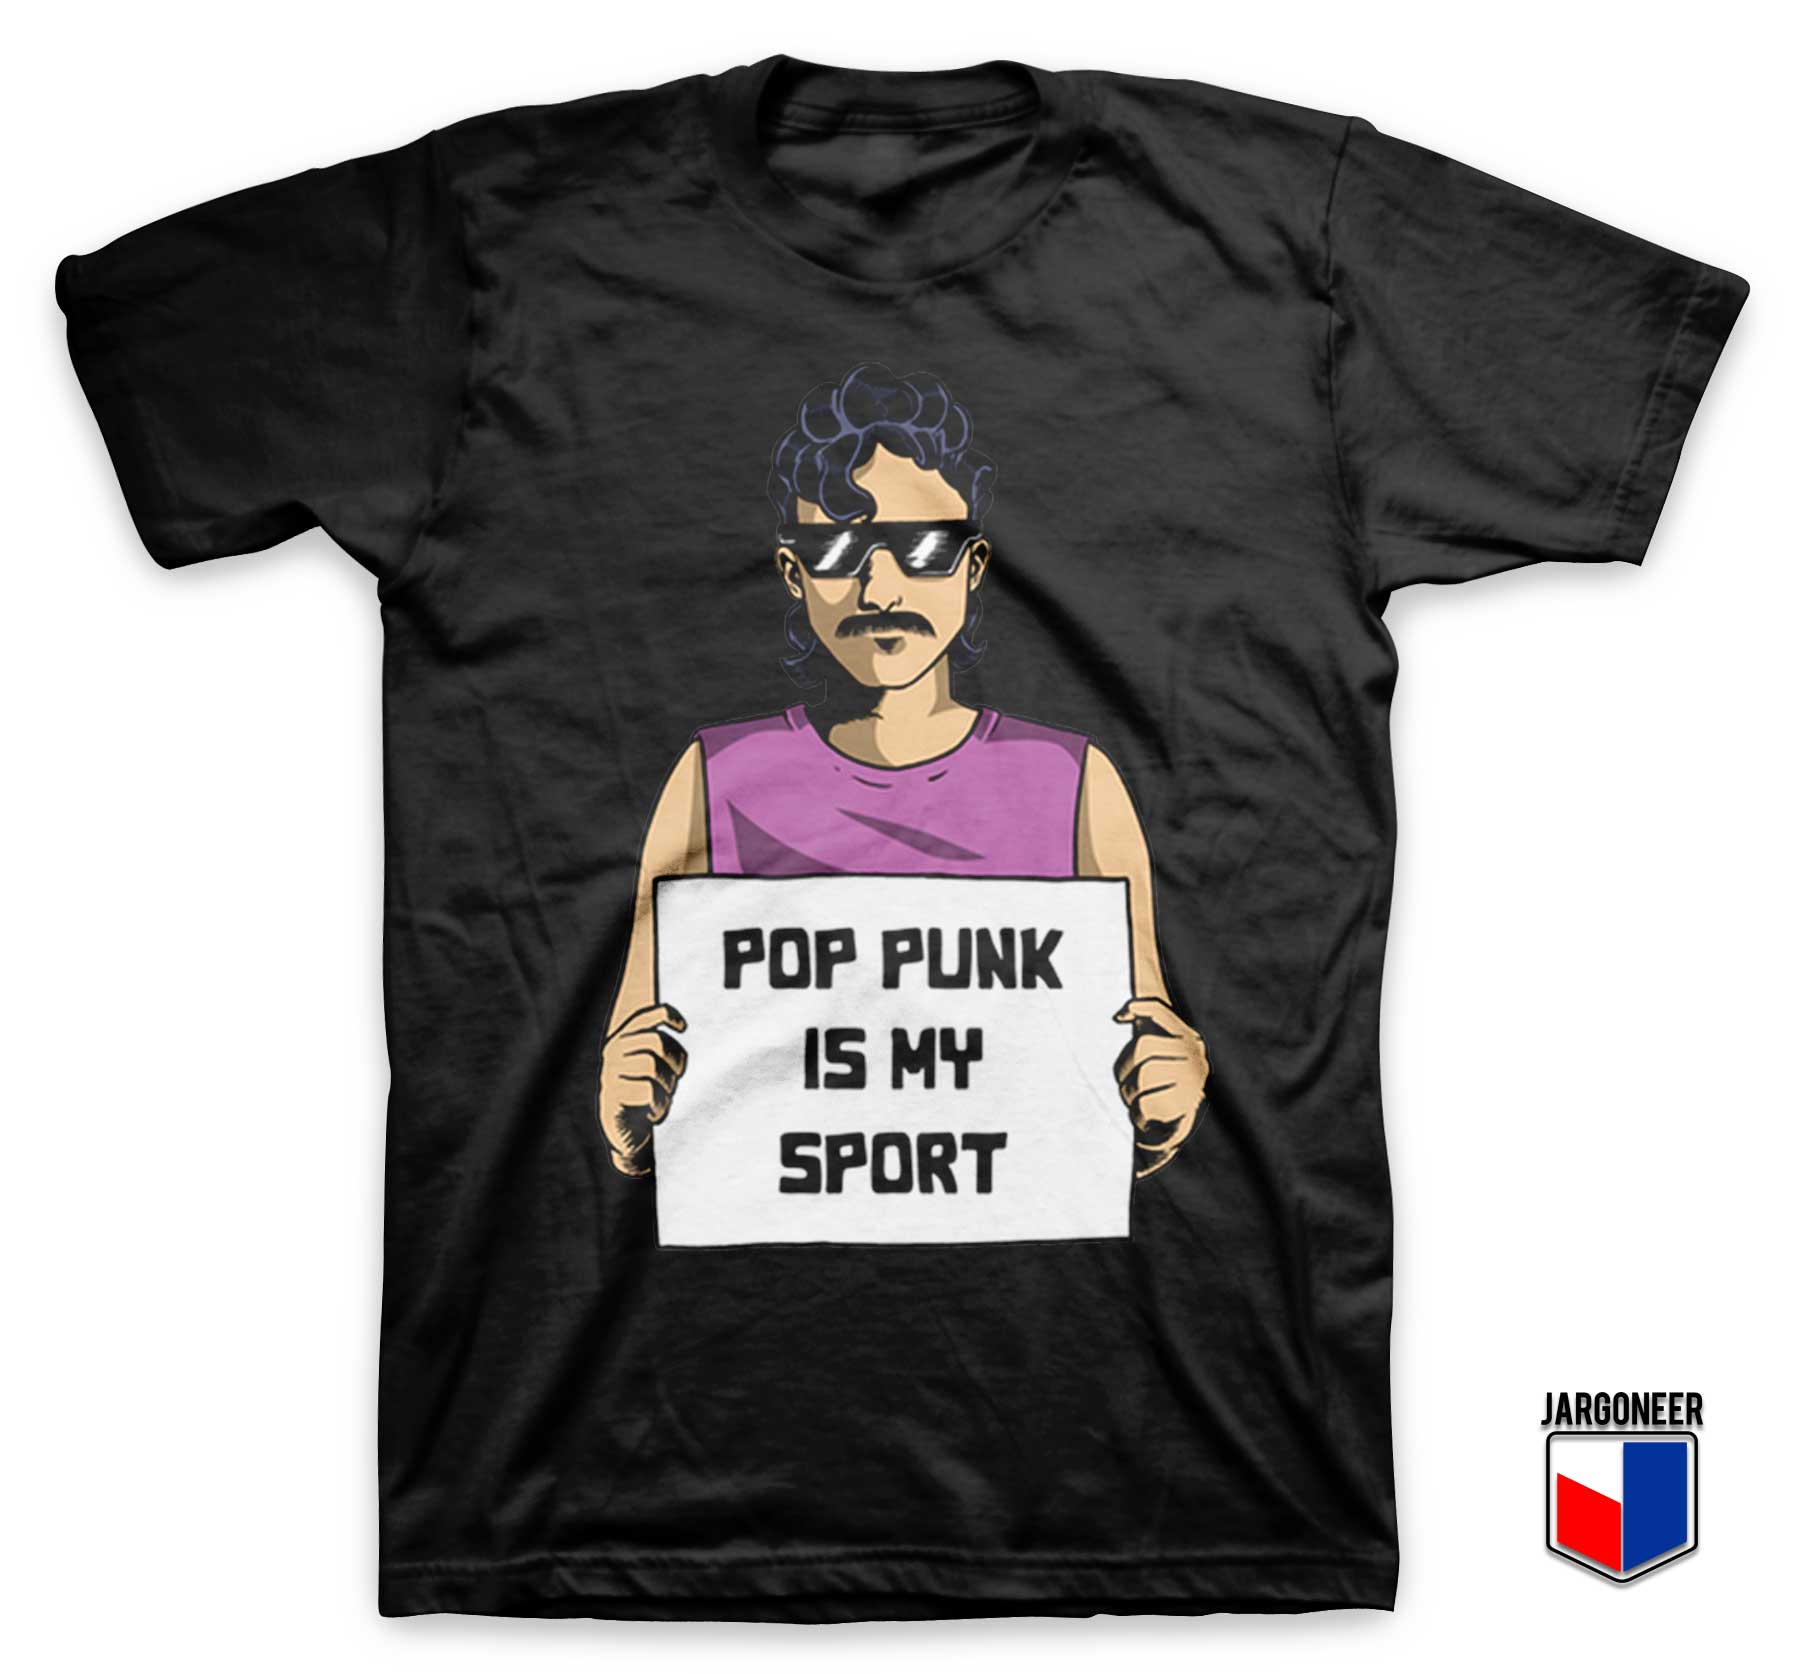 Pop Punk Is My Sport T Shirt - Shop Unique Graphic Cool Shirt Designs